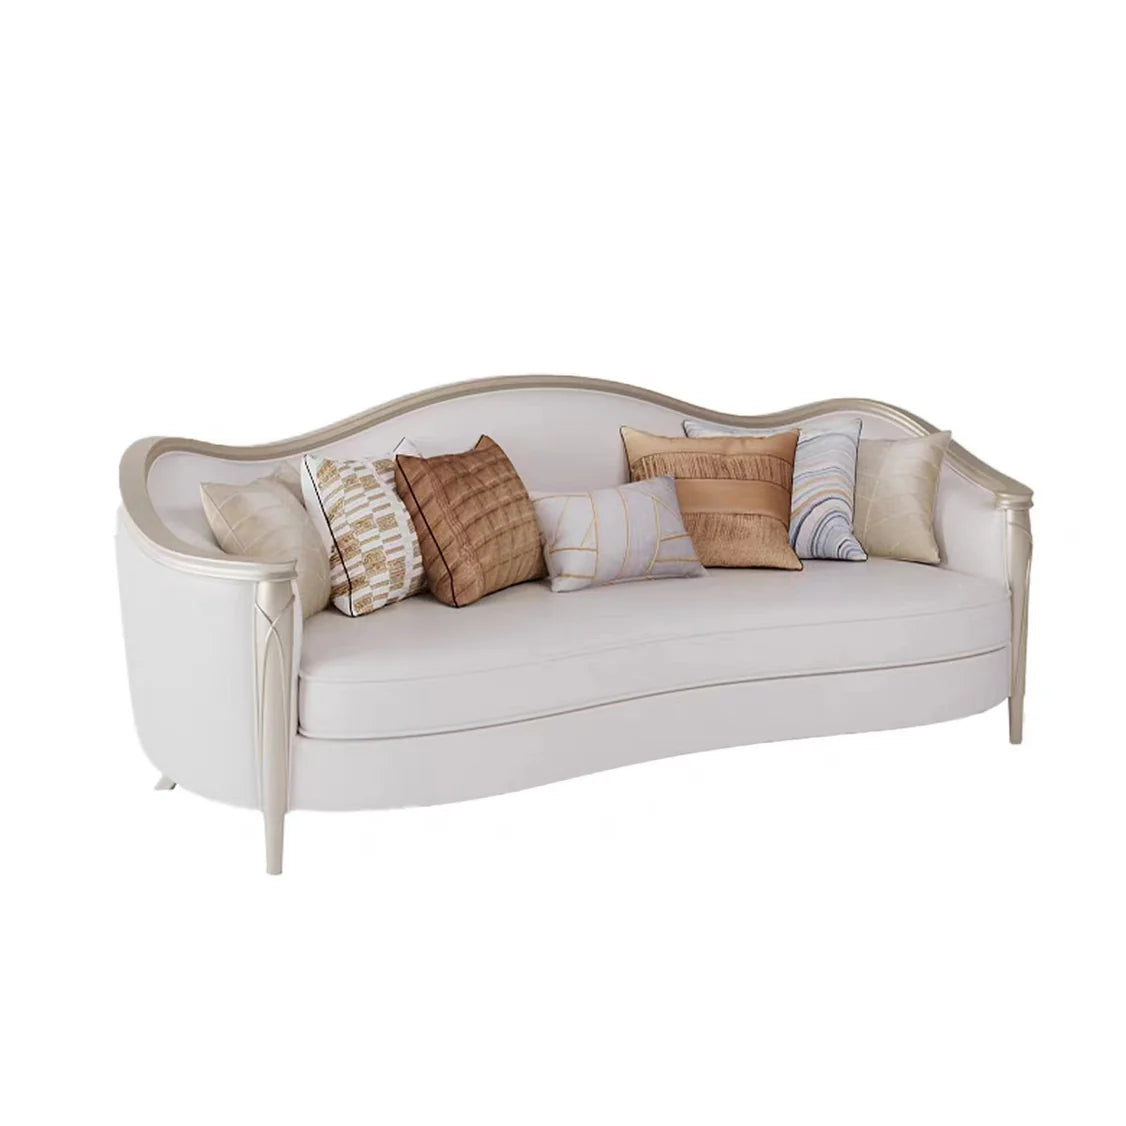 Luxury Style Irregular Shape Leather Sofa